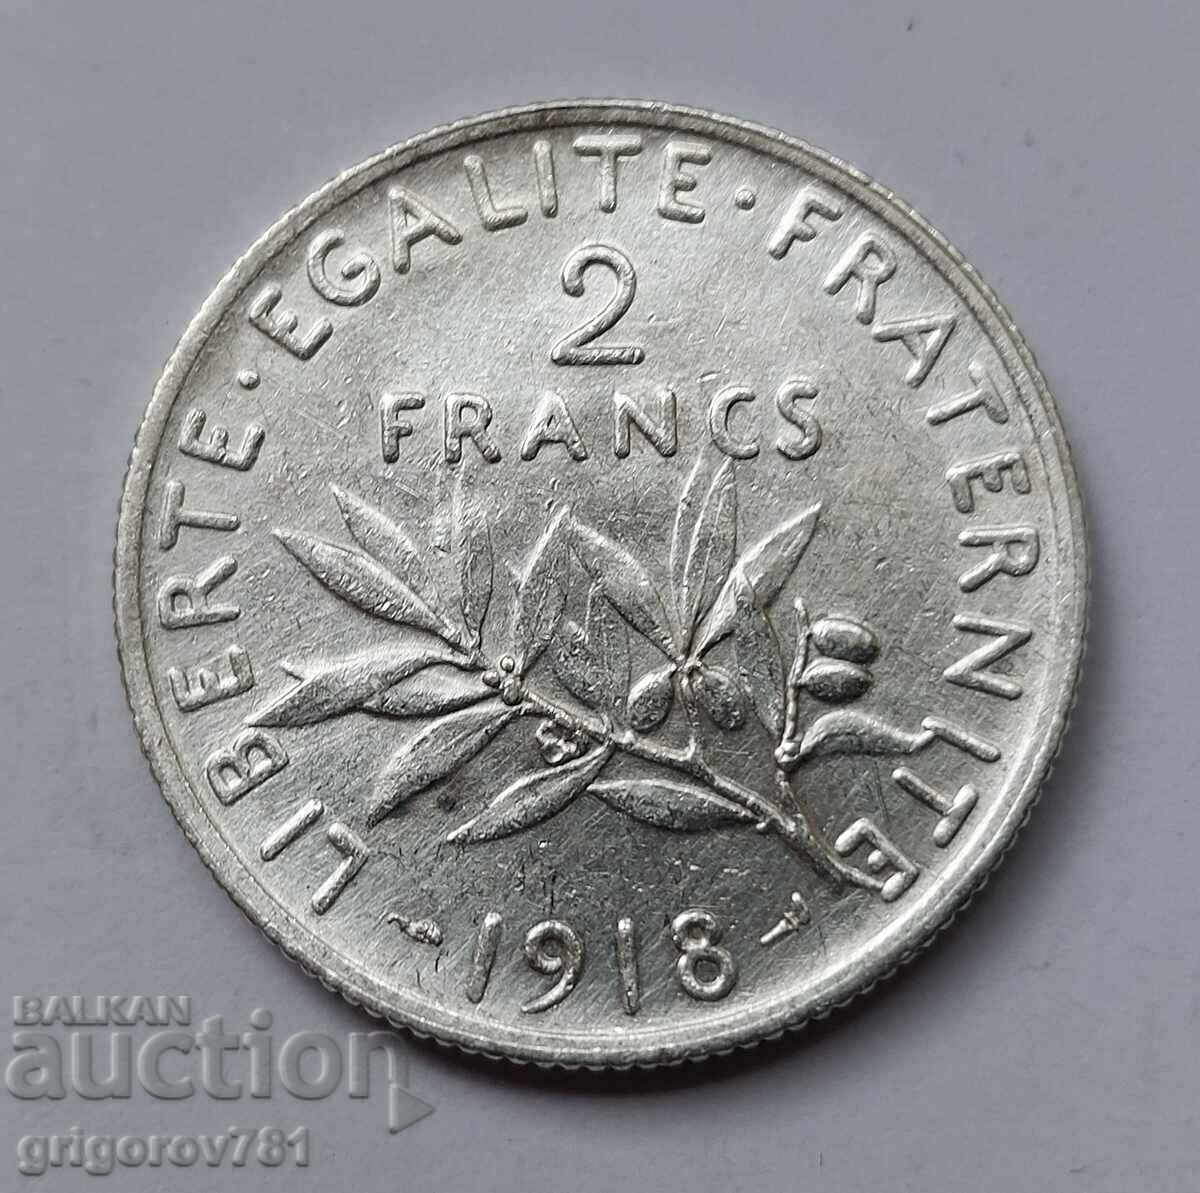 2 Φράγκα Ασήμι Γαλλία 1918 - Ασημένιο νόμισμα #88